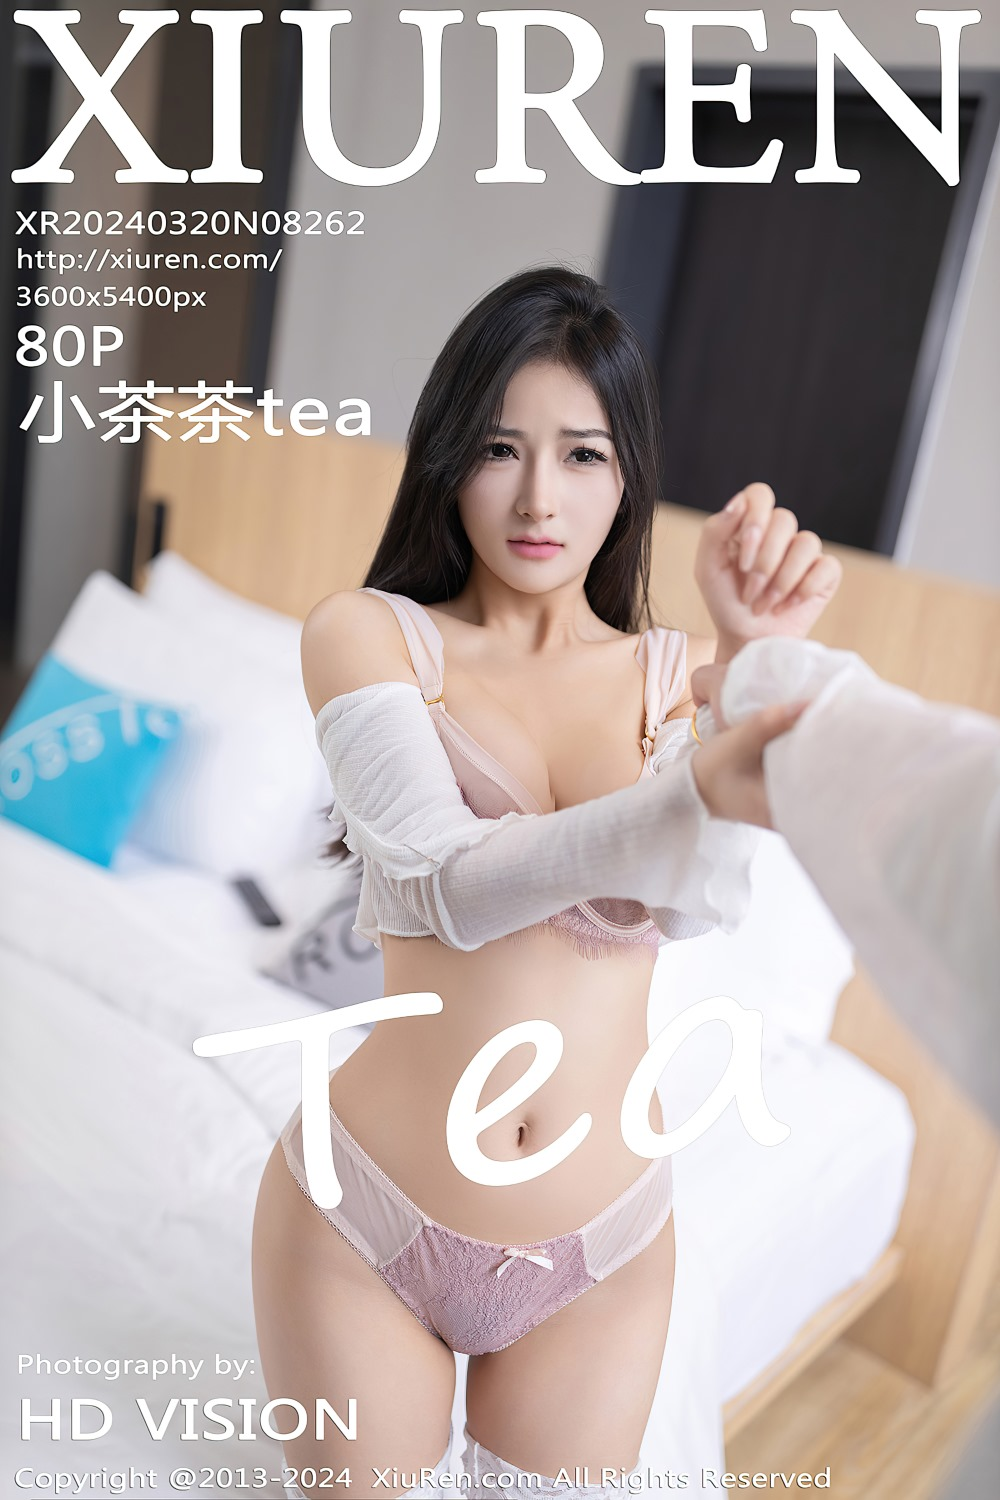 [秀人网] 2024.03.20 NO.8262 小茶茶tea 白色服饰[81P/656MB] 第1张